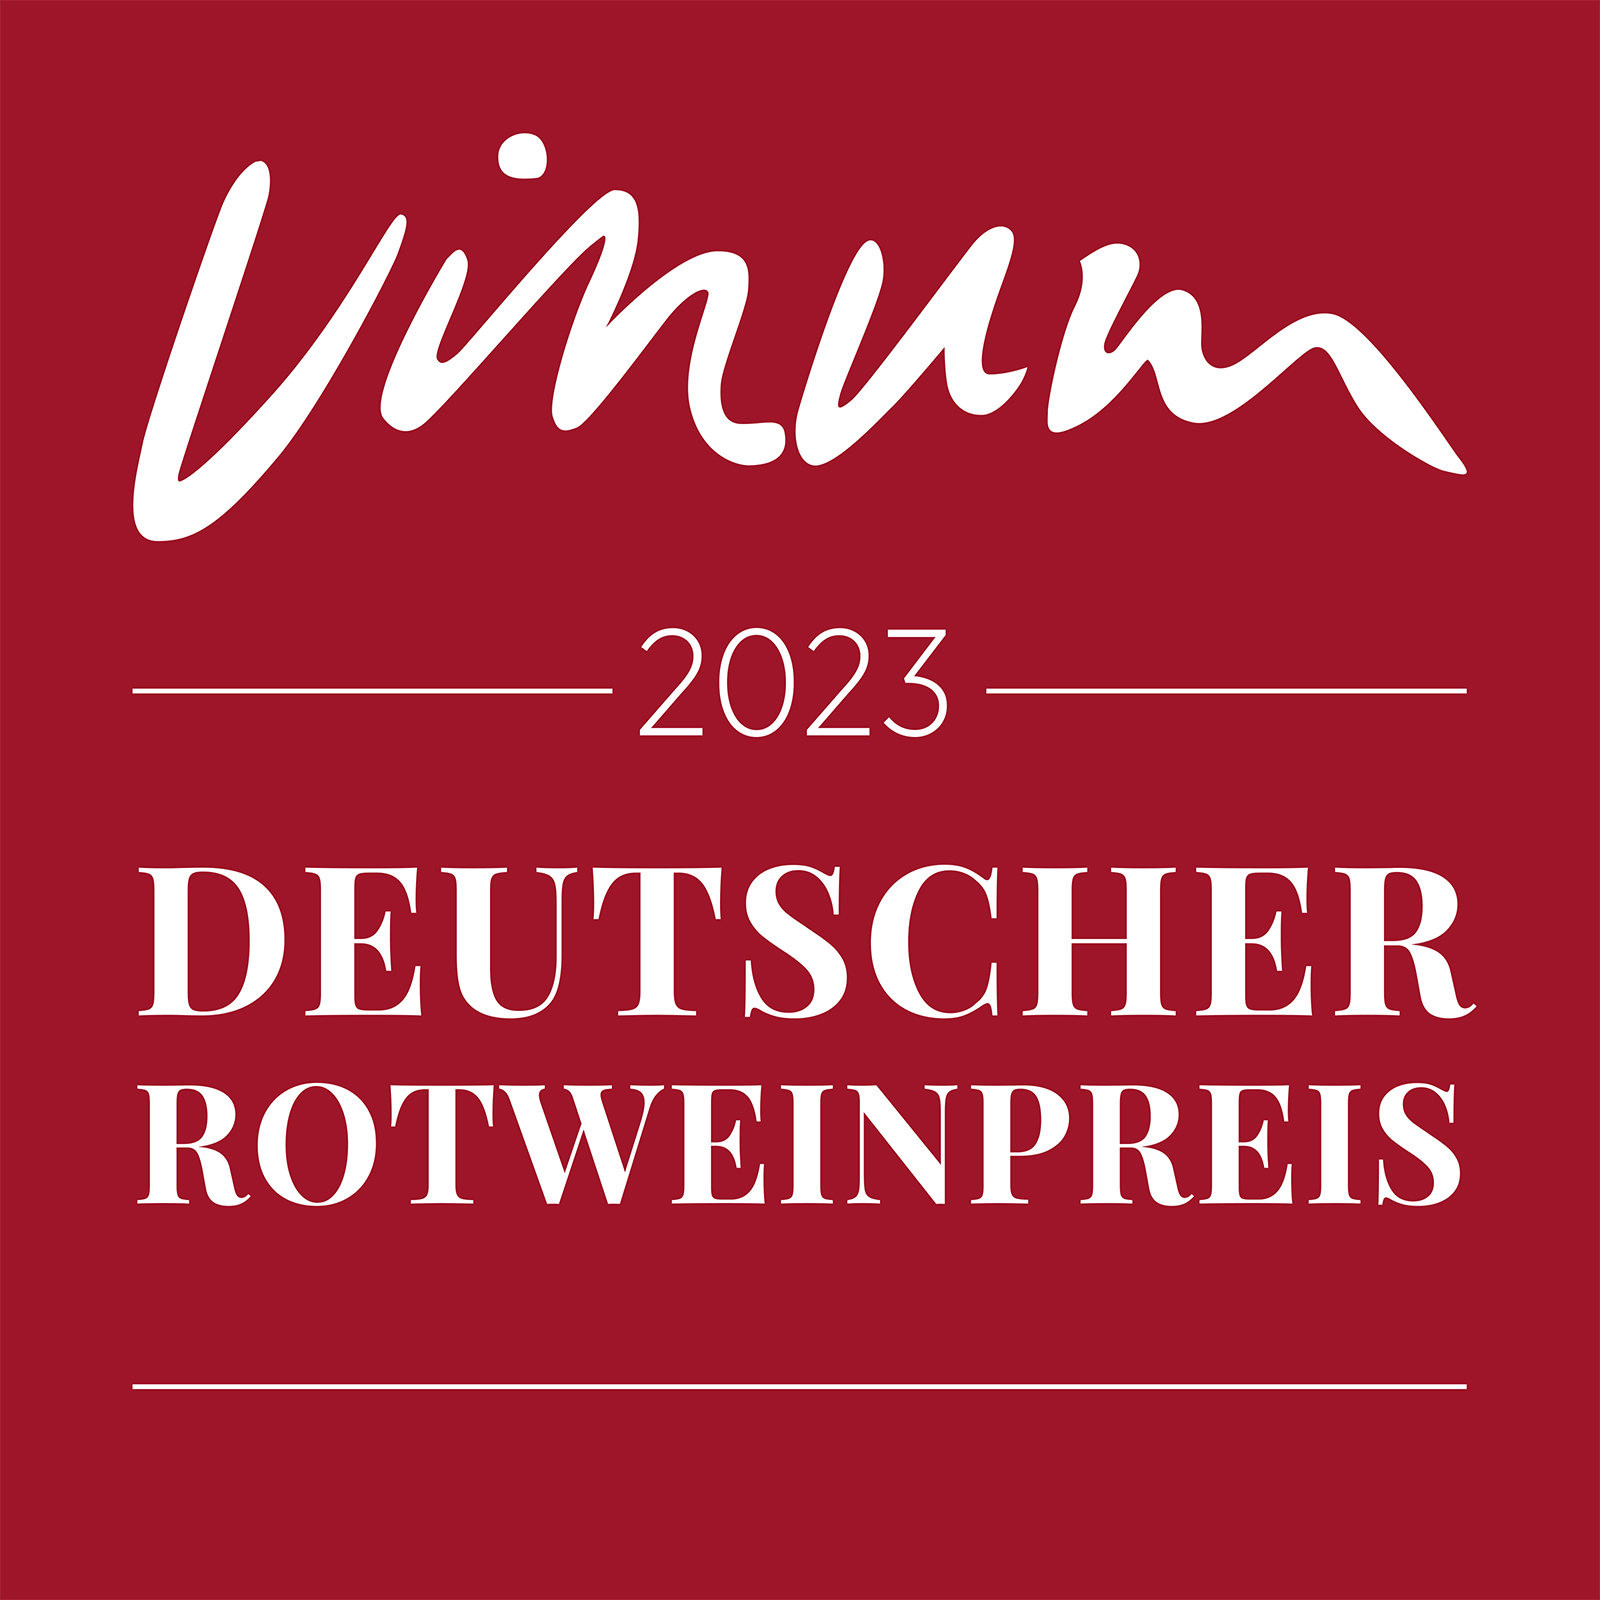 Bild-Auszeichnung: 91 Punkte beim  VINUM Deutscher Rotweinpreis 2023